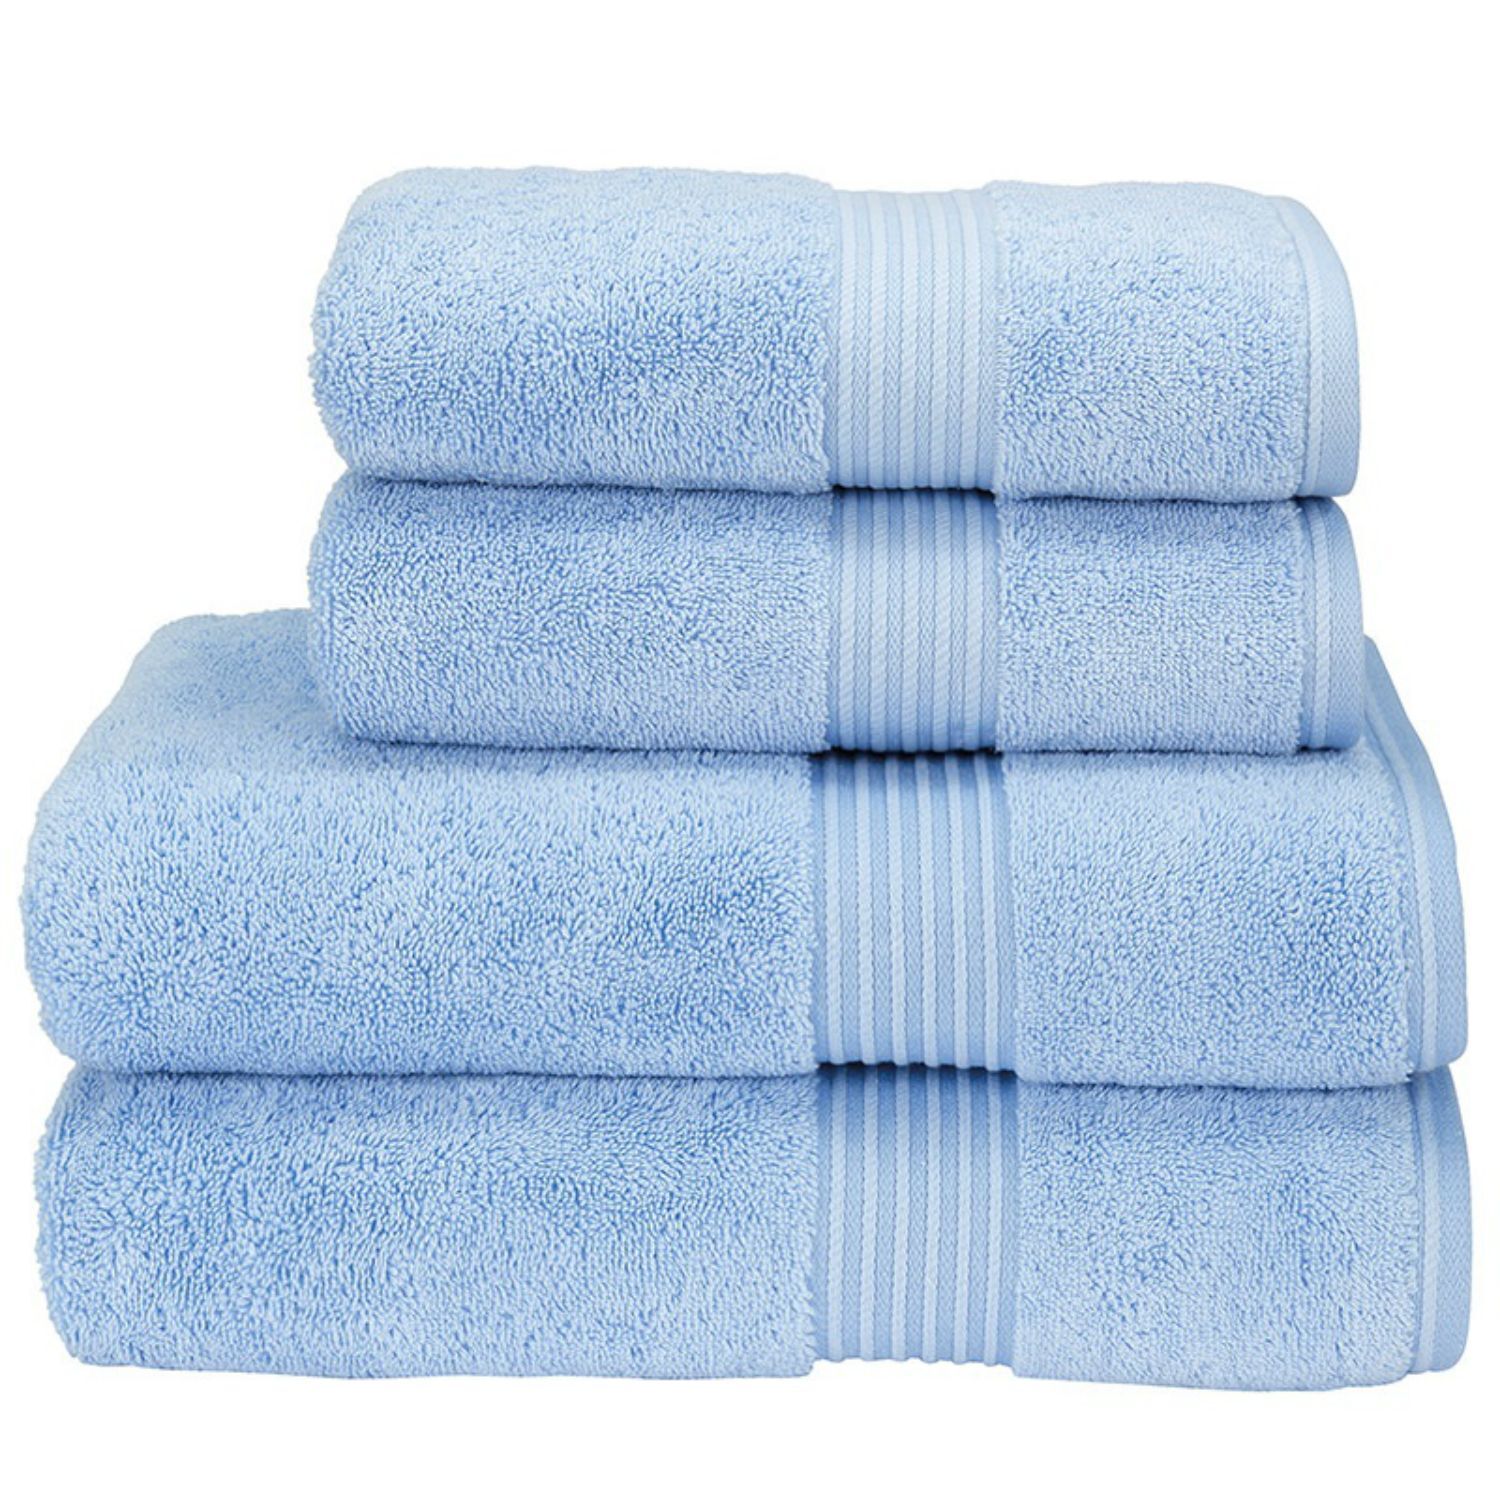 Christy Hotel Bath Towels